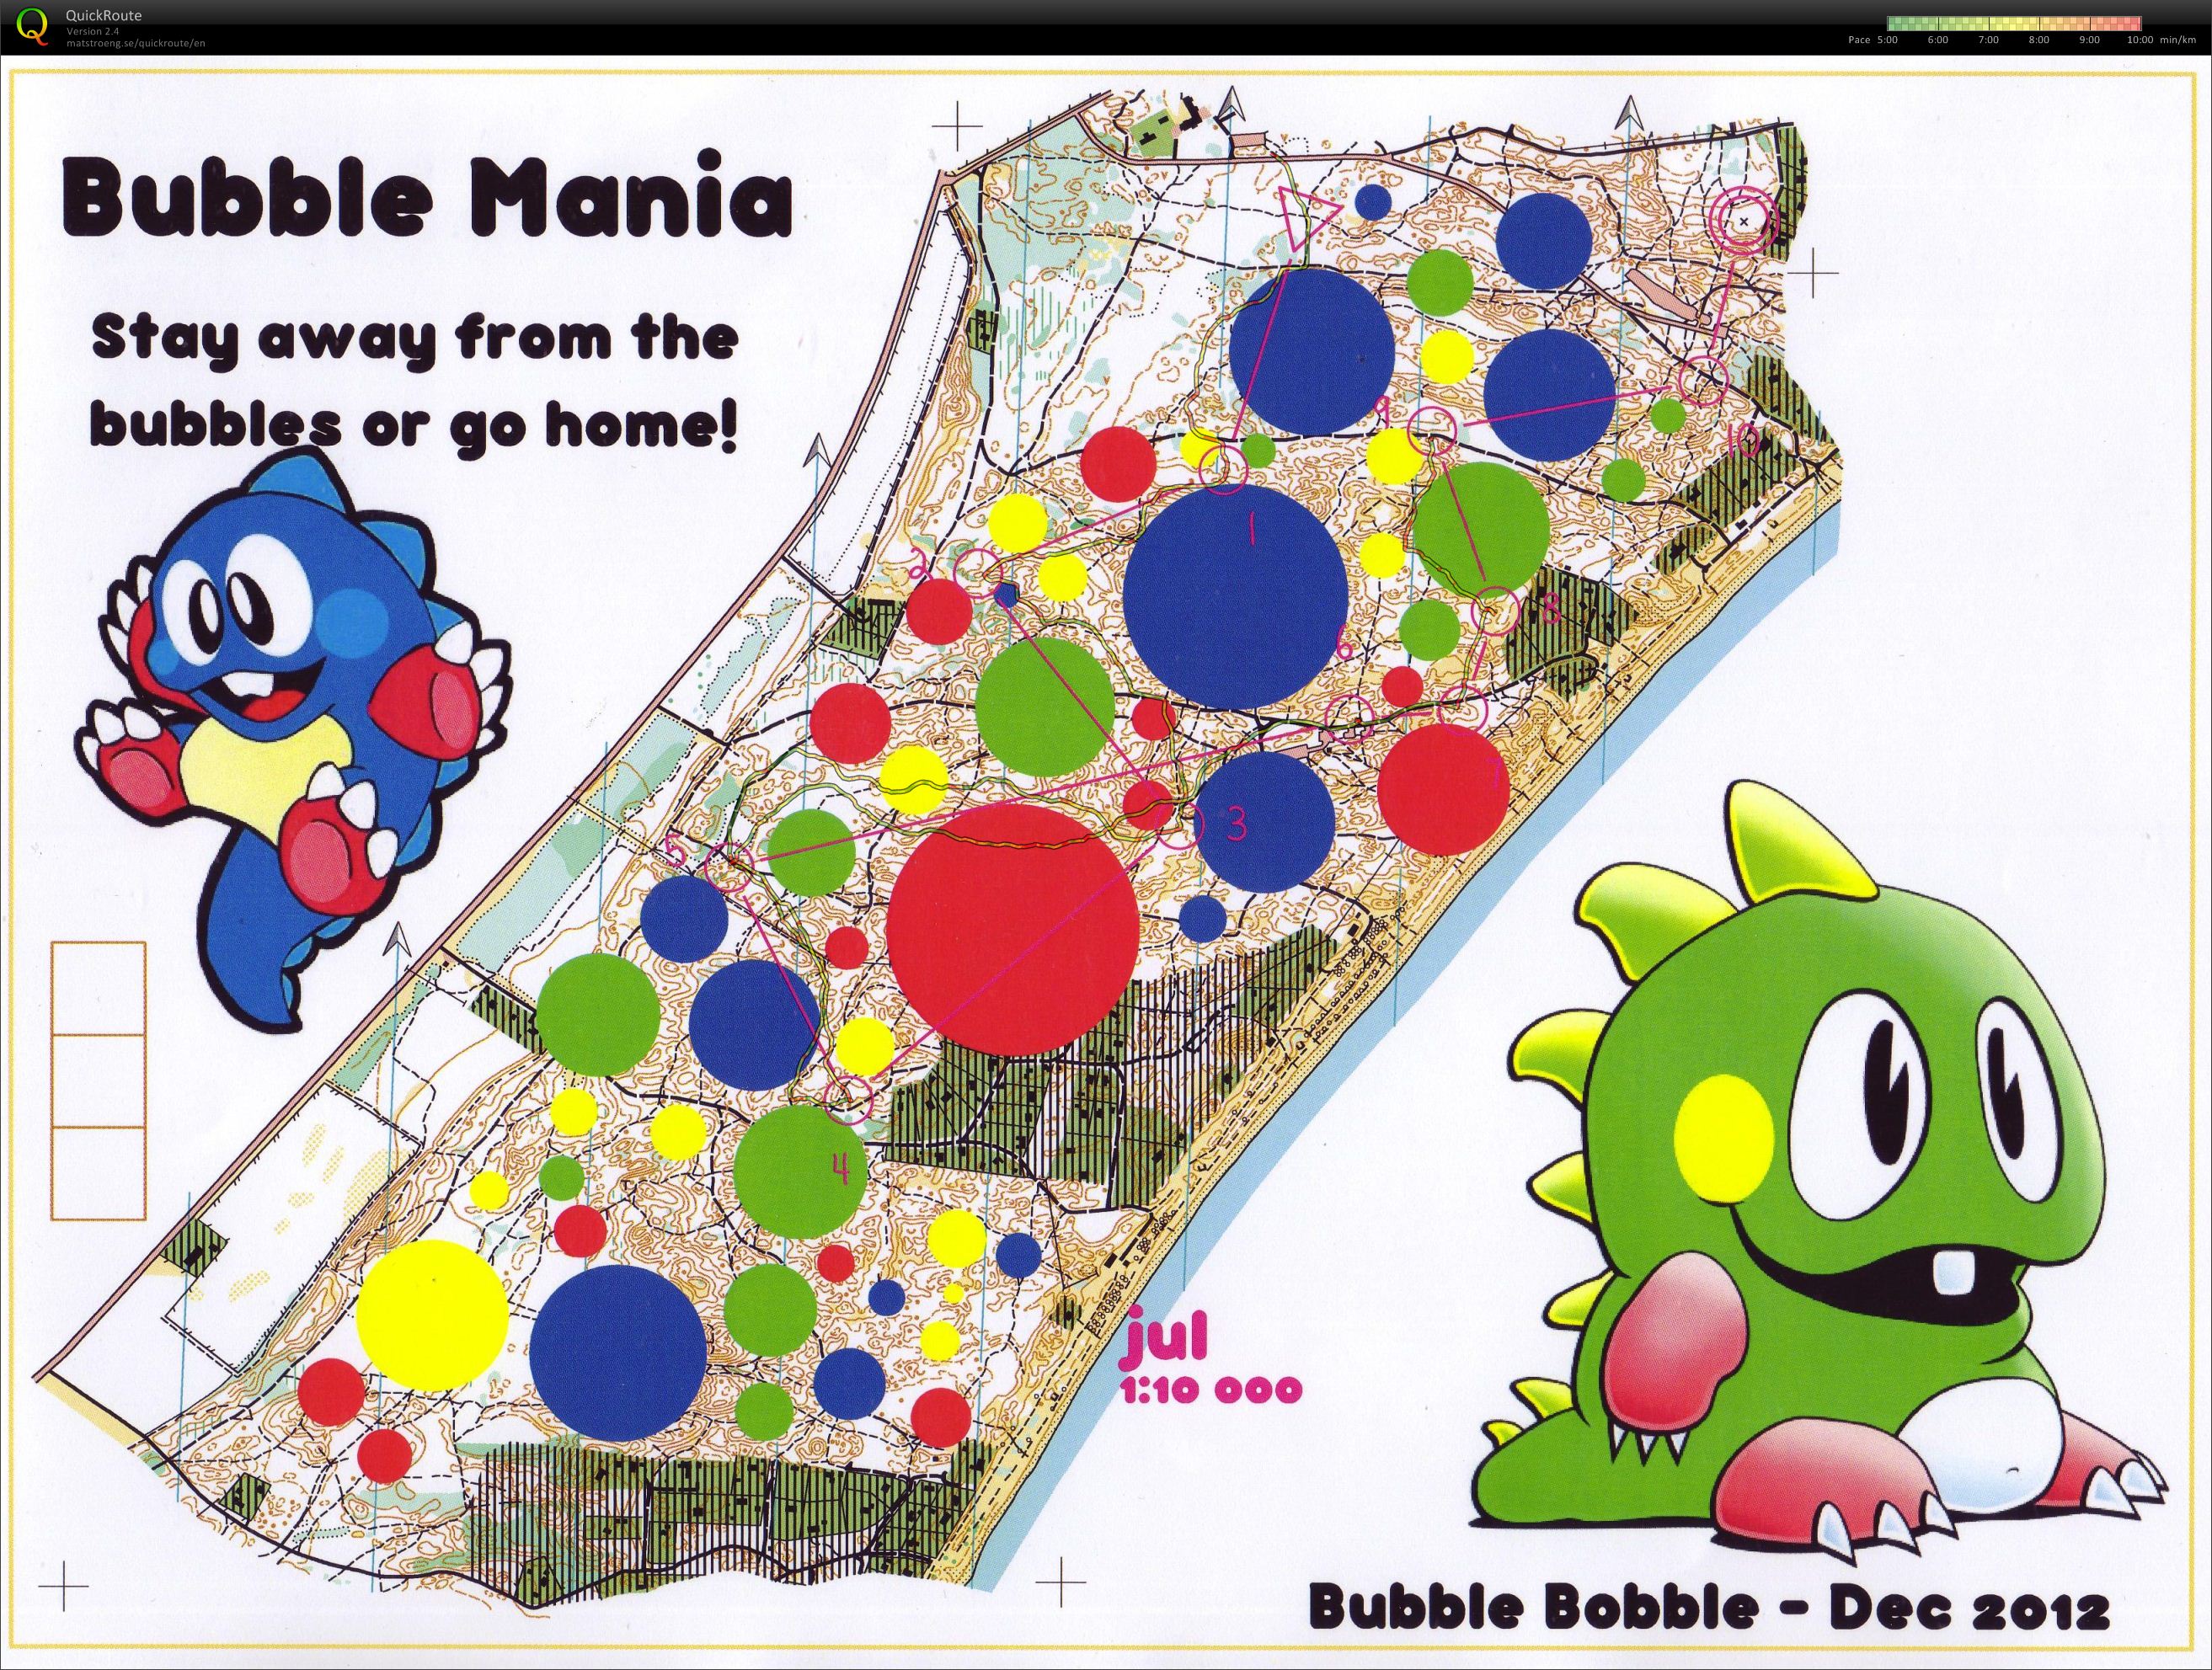 Bubblemania (02.01.2013)